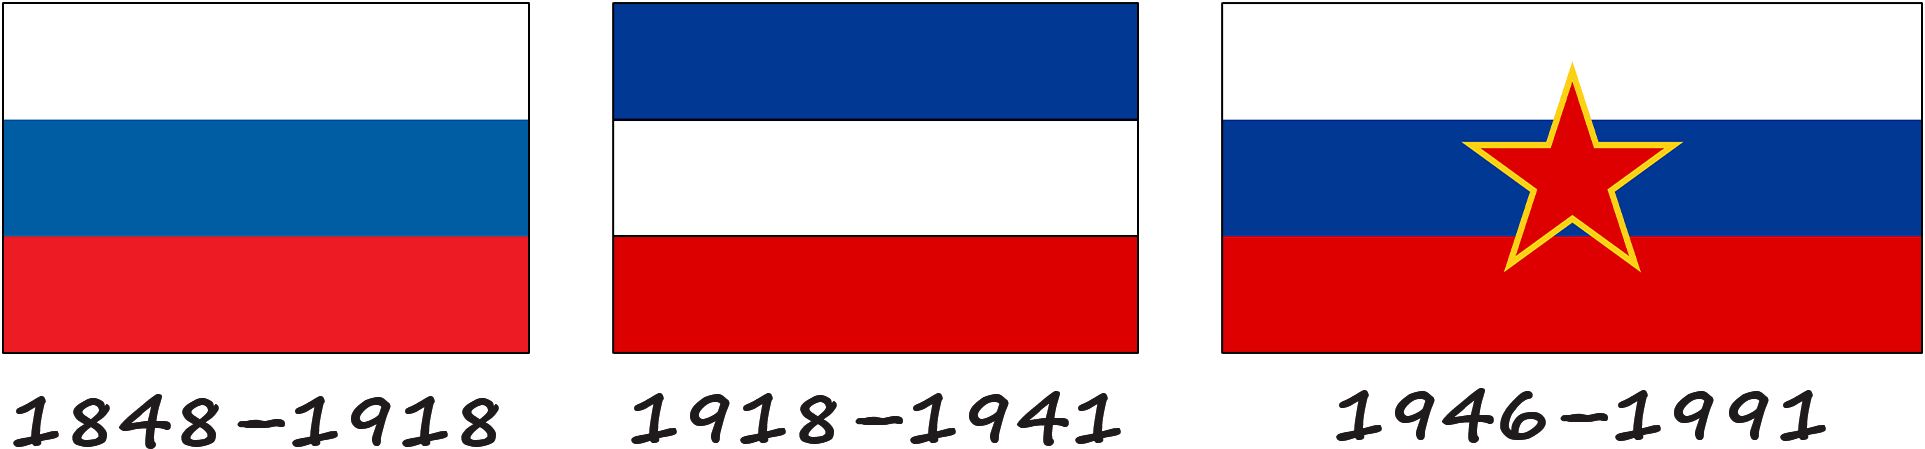 Historia de la bandera eslovena